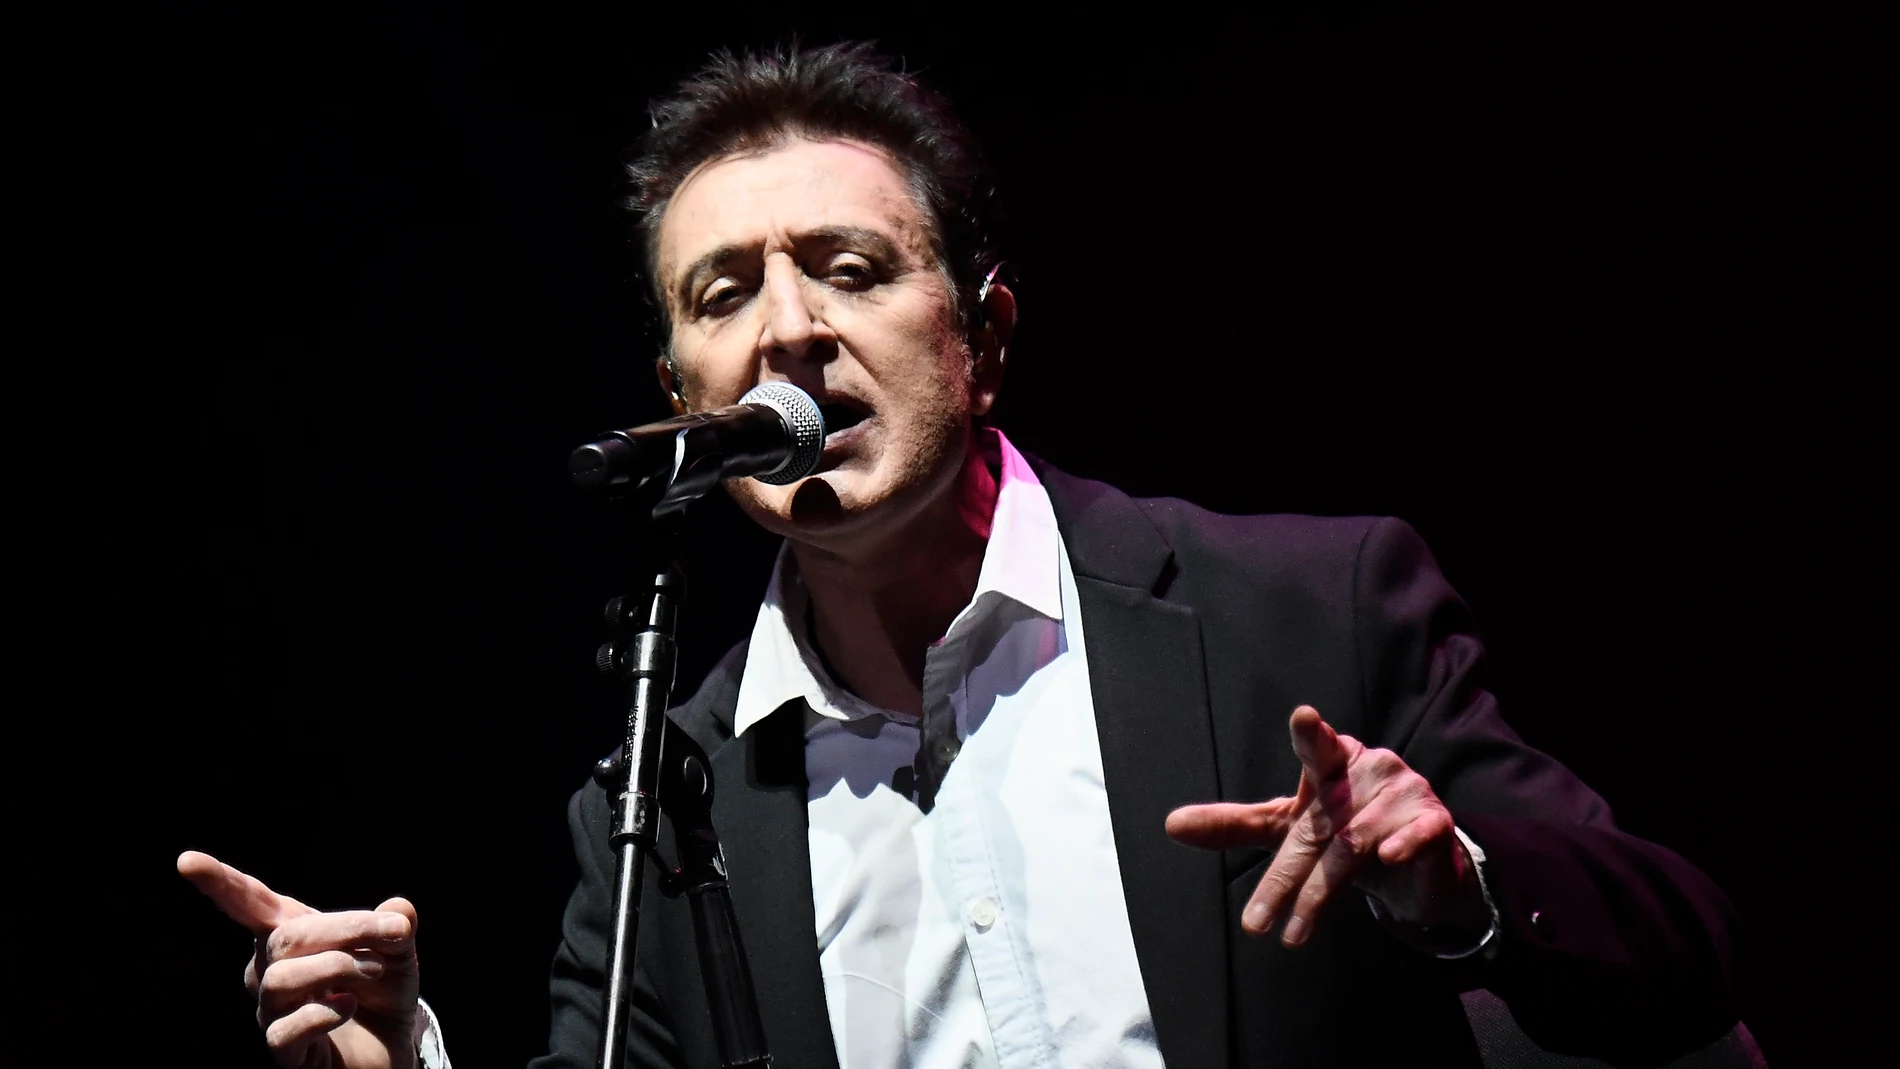 Manolo García cancela los conciertos de noviembre y diciembre por una  miocarditis aguda